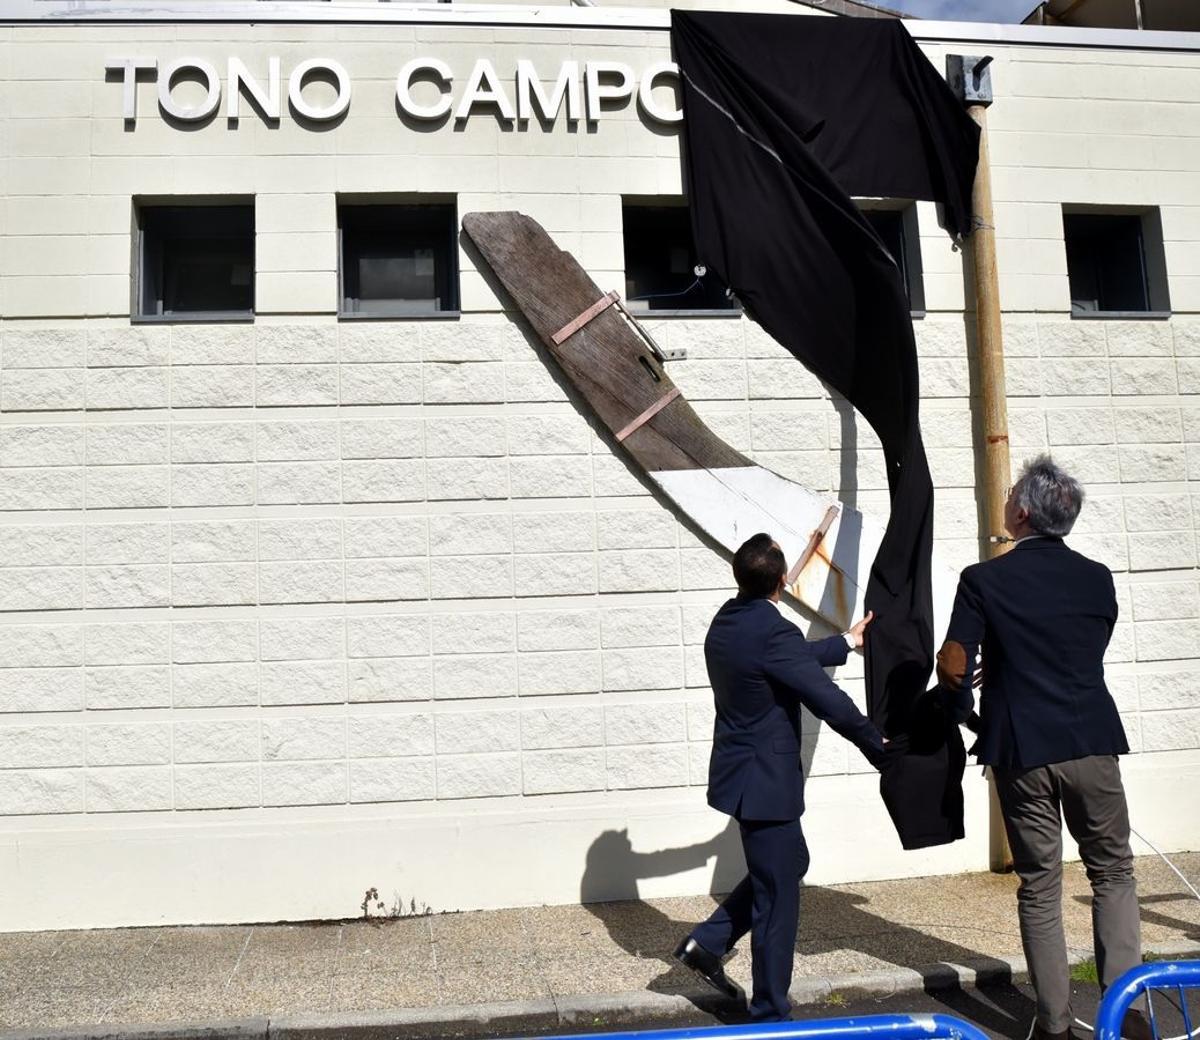 El pabellón ya lleva el nombre de Tono Campos.